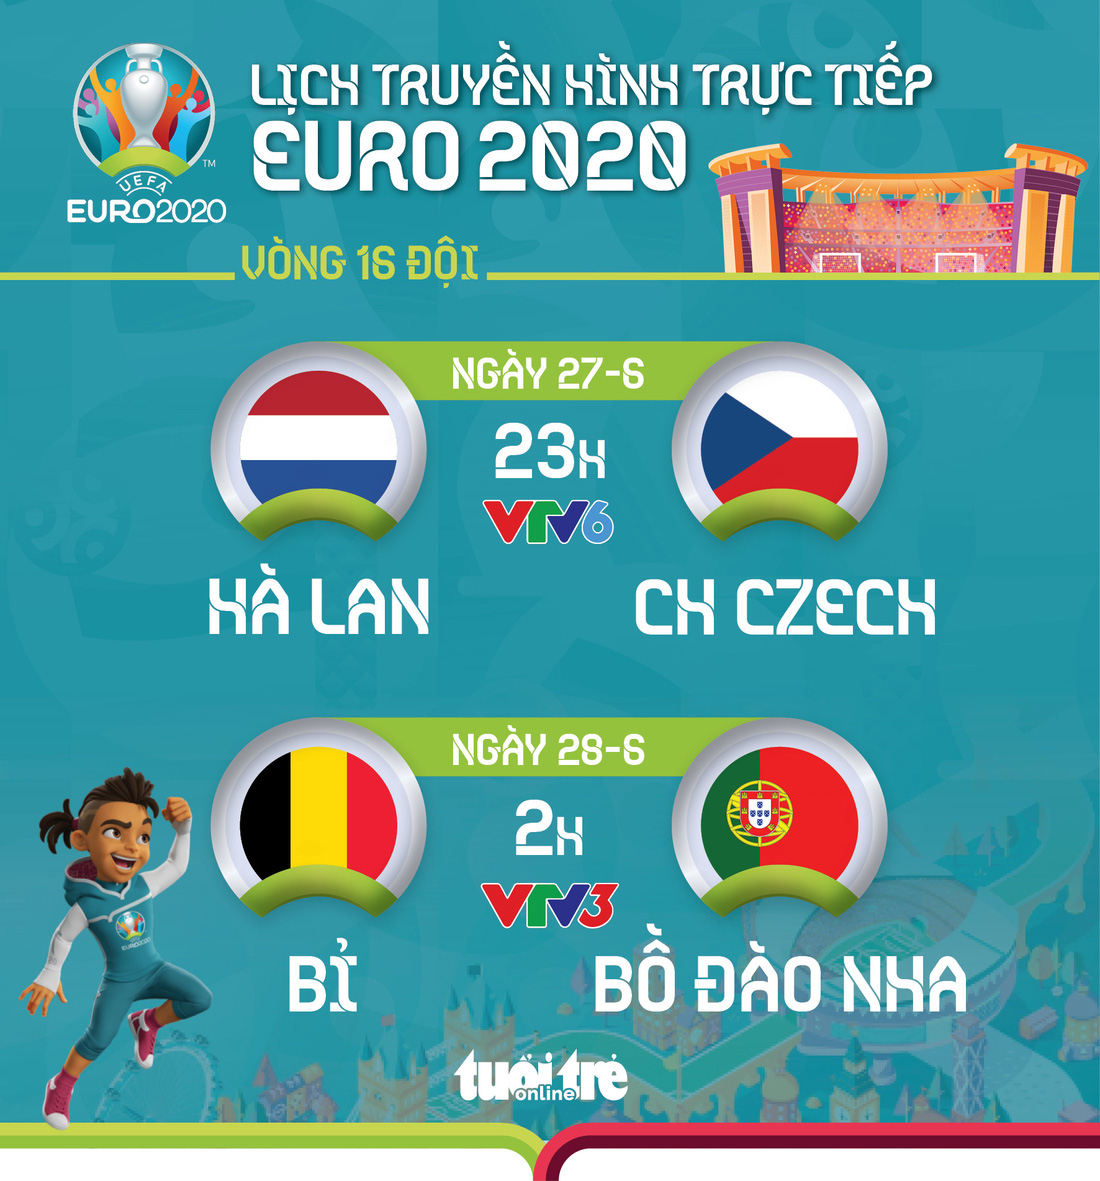 Lịch trực tiếp vòng 16 đội Euro 2020: Hà Lan - CH Czech, tâm điểm Bỉ - Bồ Đào Nha - Ảnh 1.